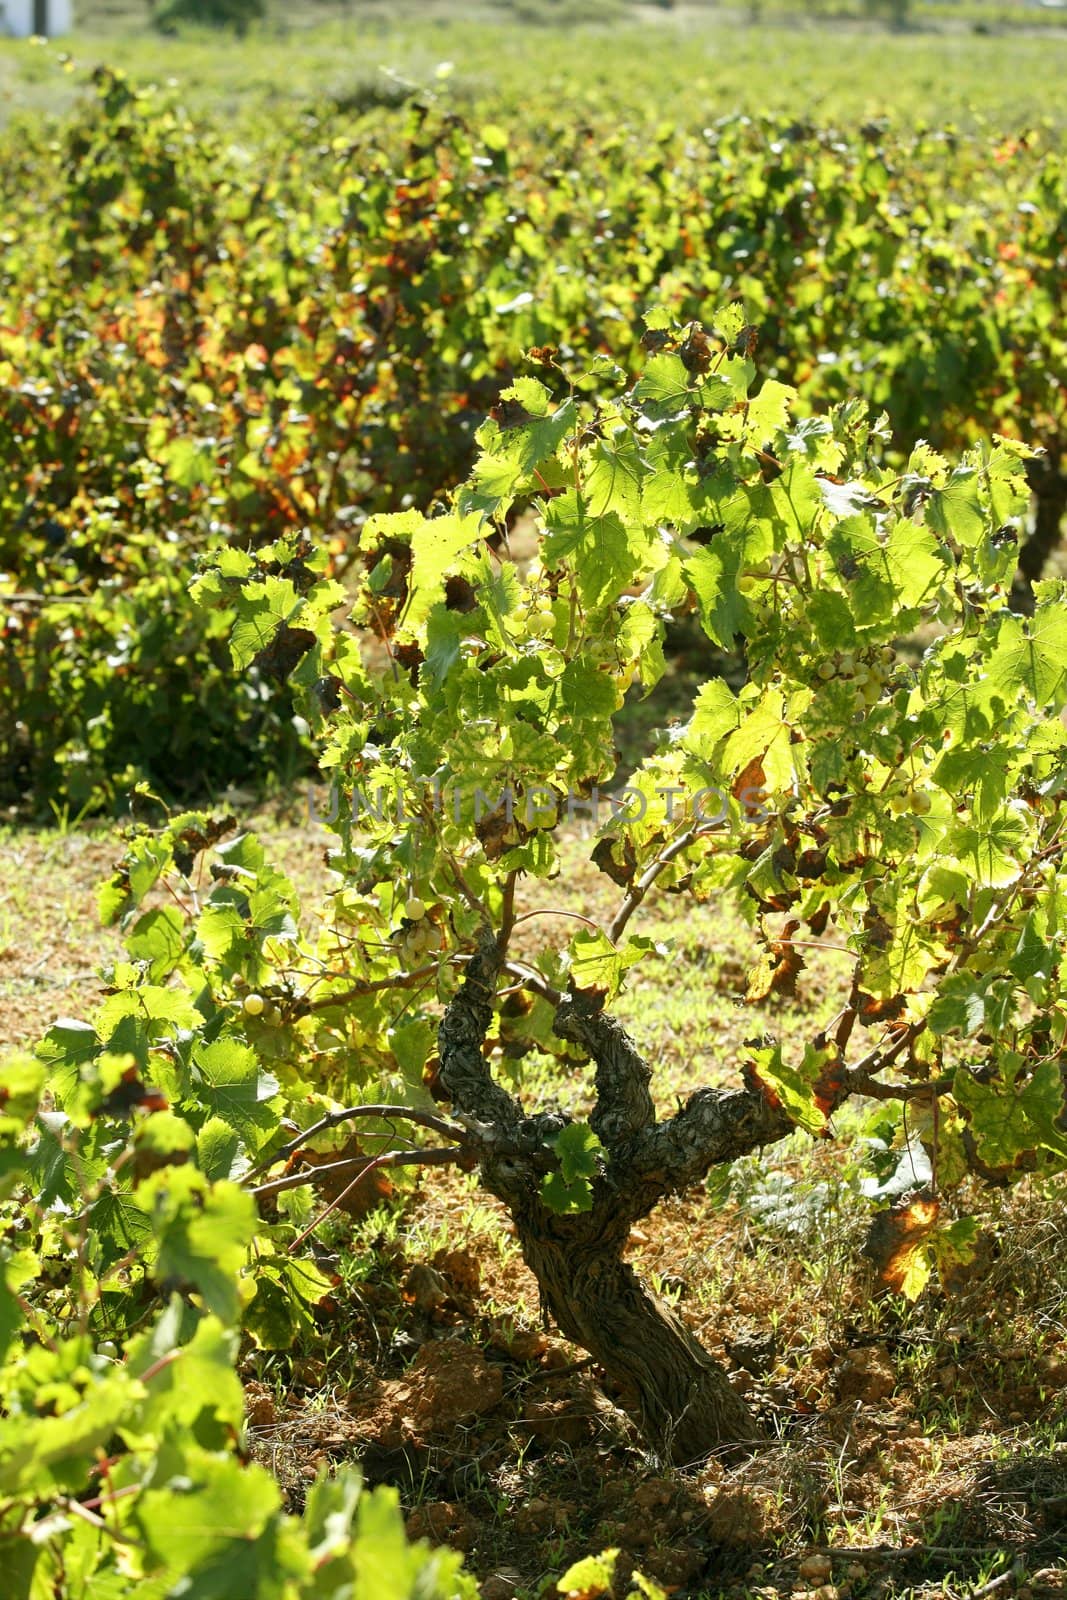 Vineyard, grape fields in mediterranean Spain by lunamarina